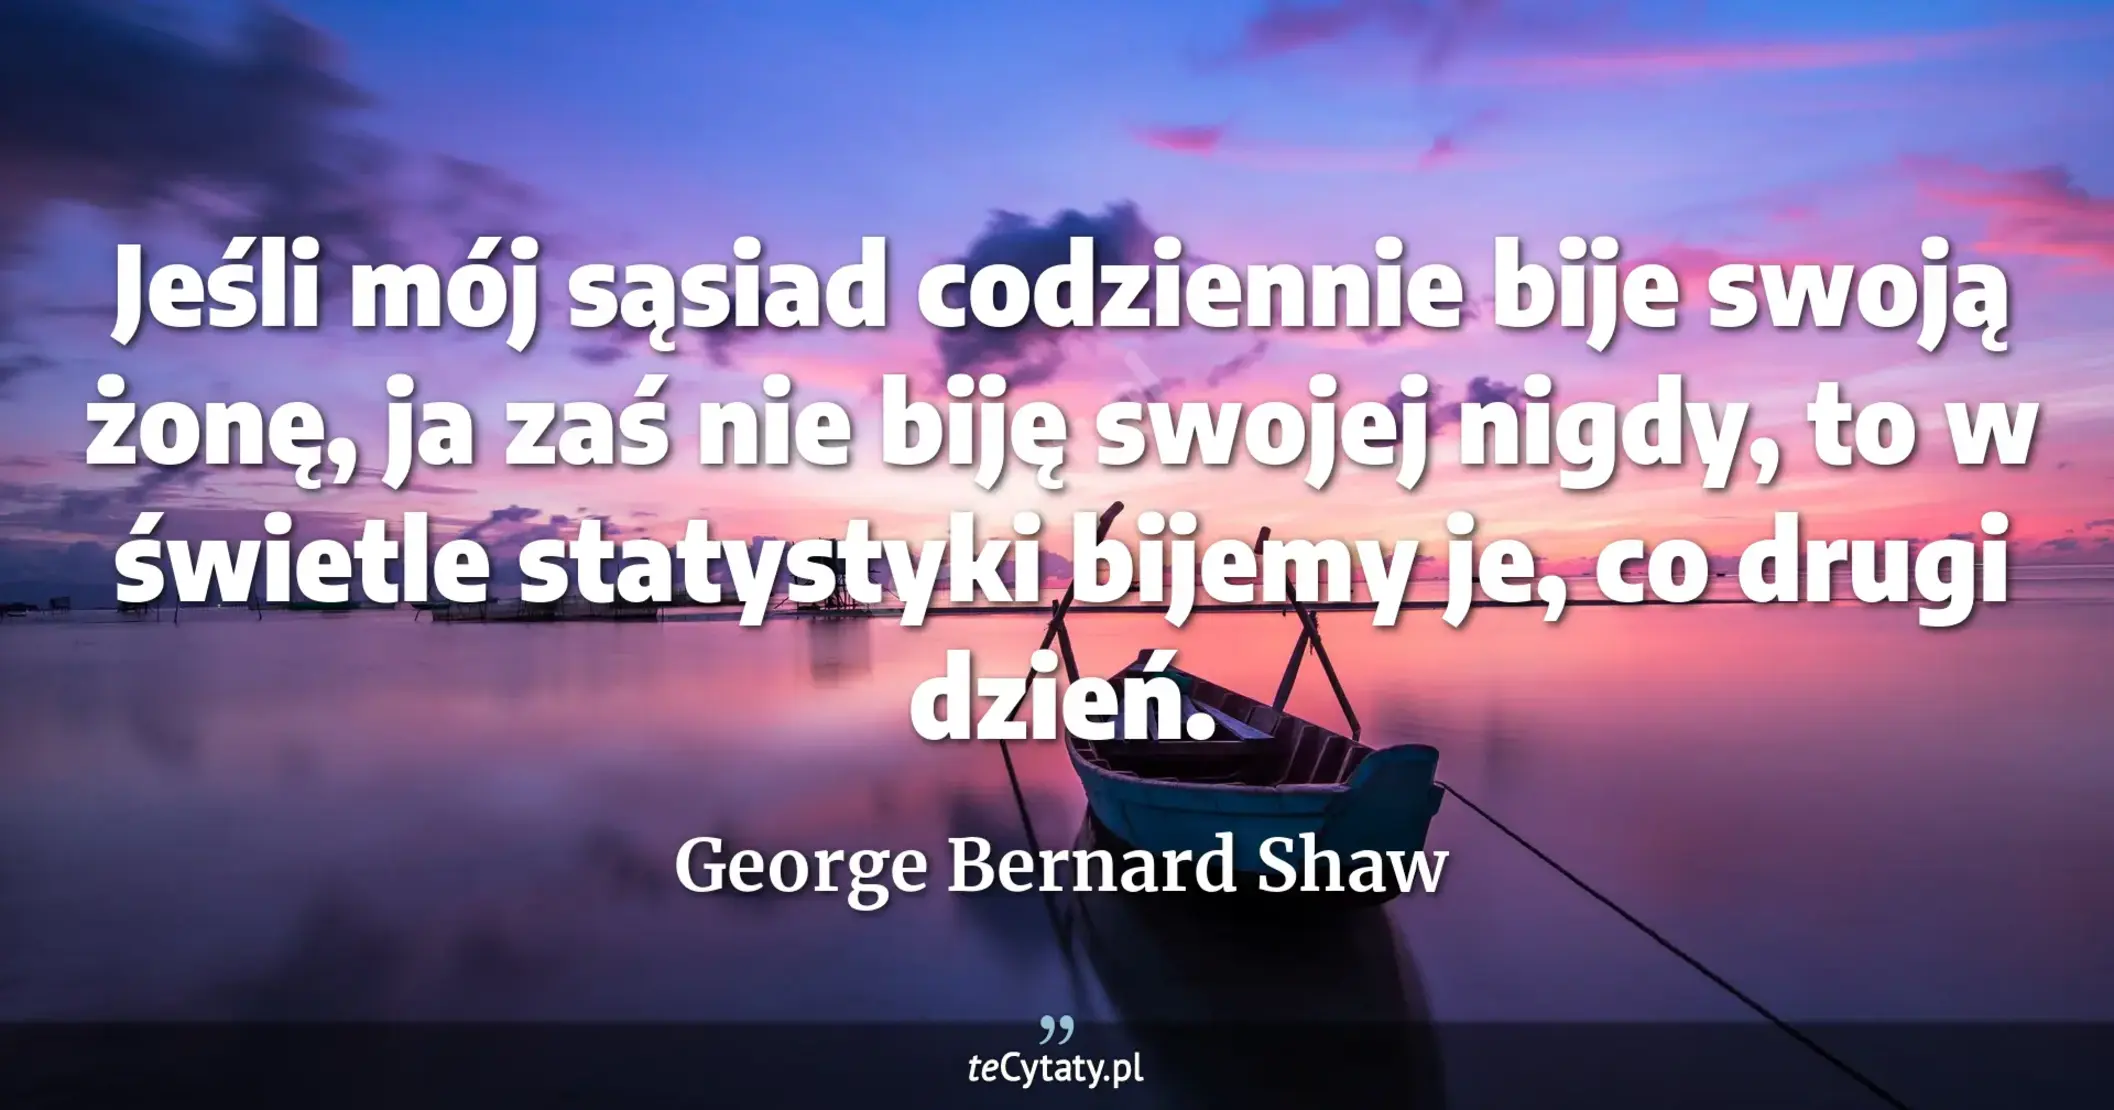 Jeśli mój sąsiad codziennie bije swoją żonę, ja zaś nie biję swojej nigdy, to w świetle statystyki bijemy je, co drugi dzień. - George Bernard Shaw